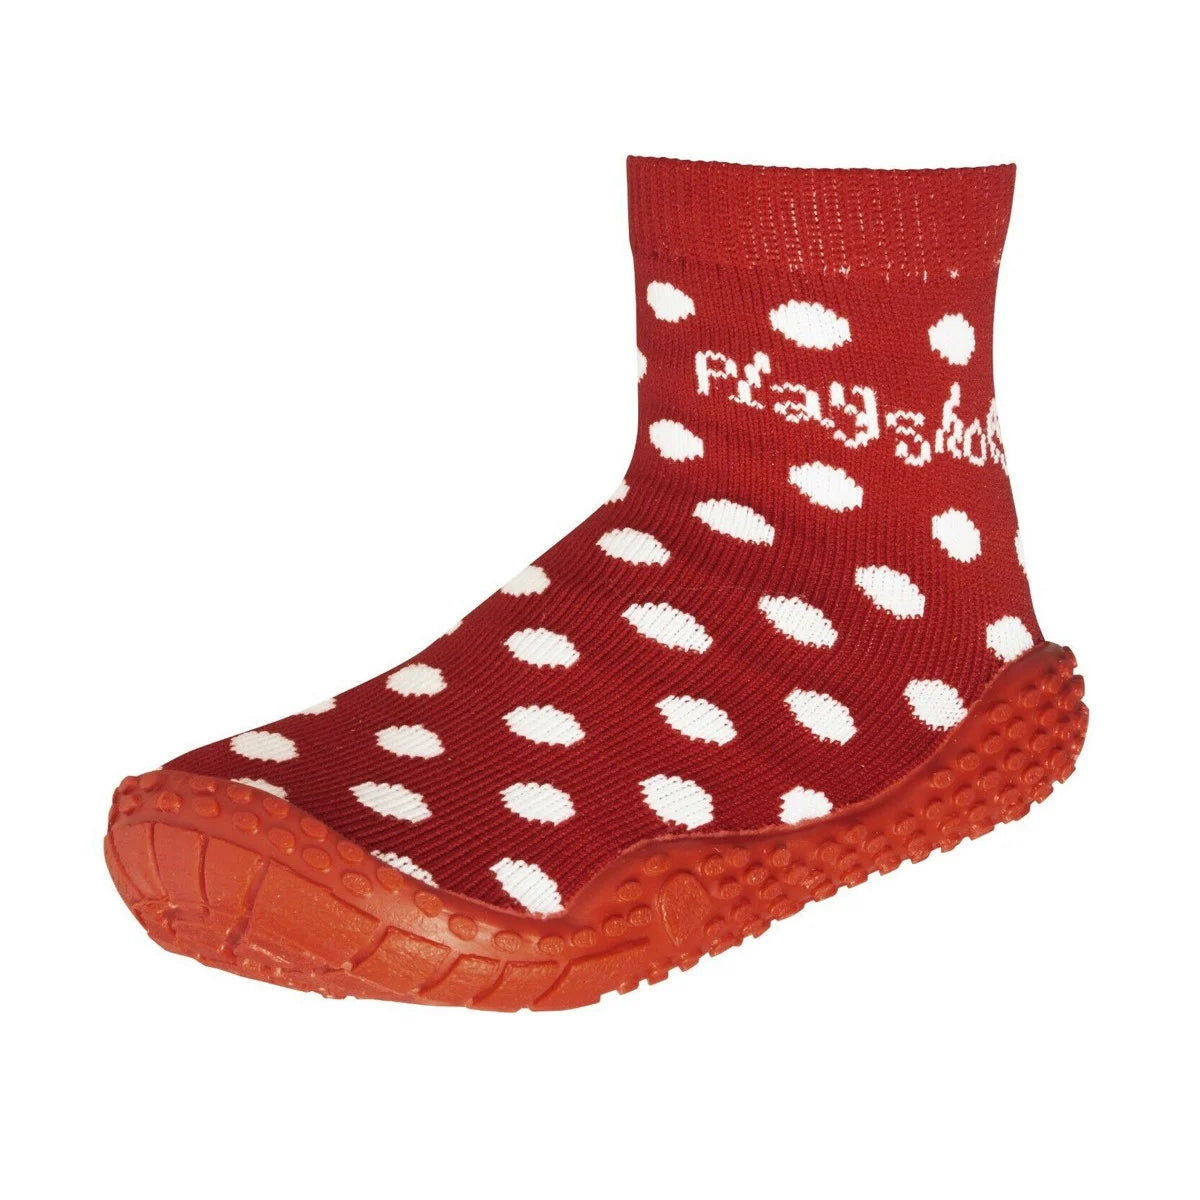 Aqua-Socken für Kinder in rot mit weißen Punkten